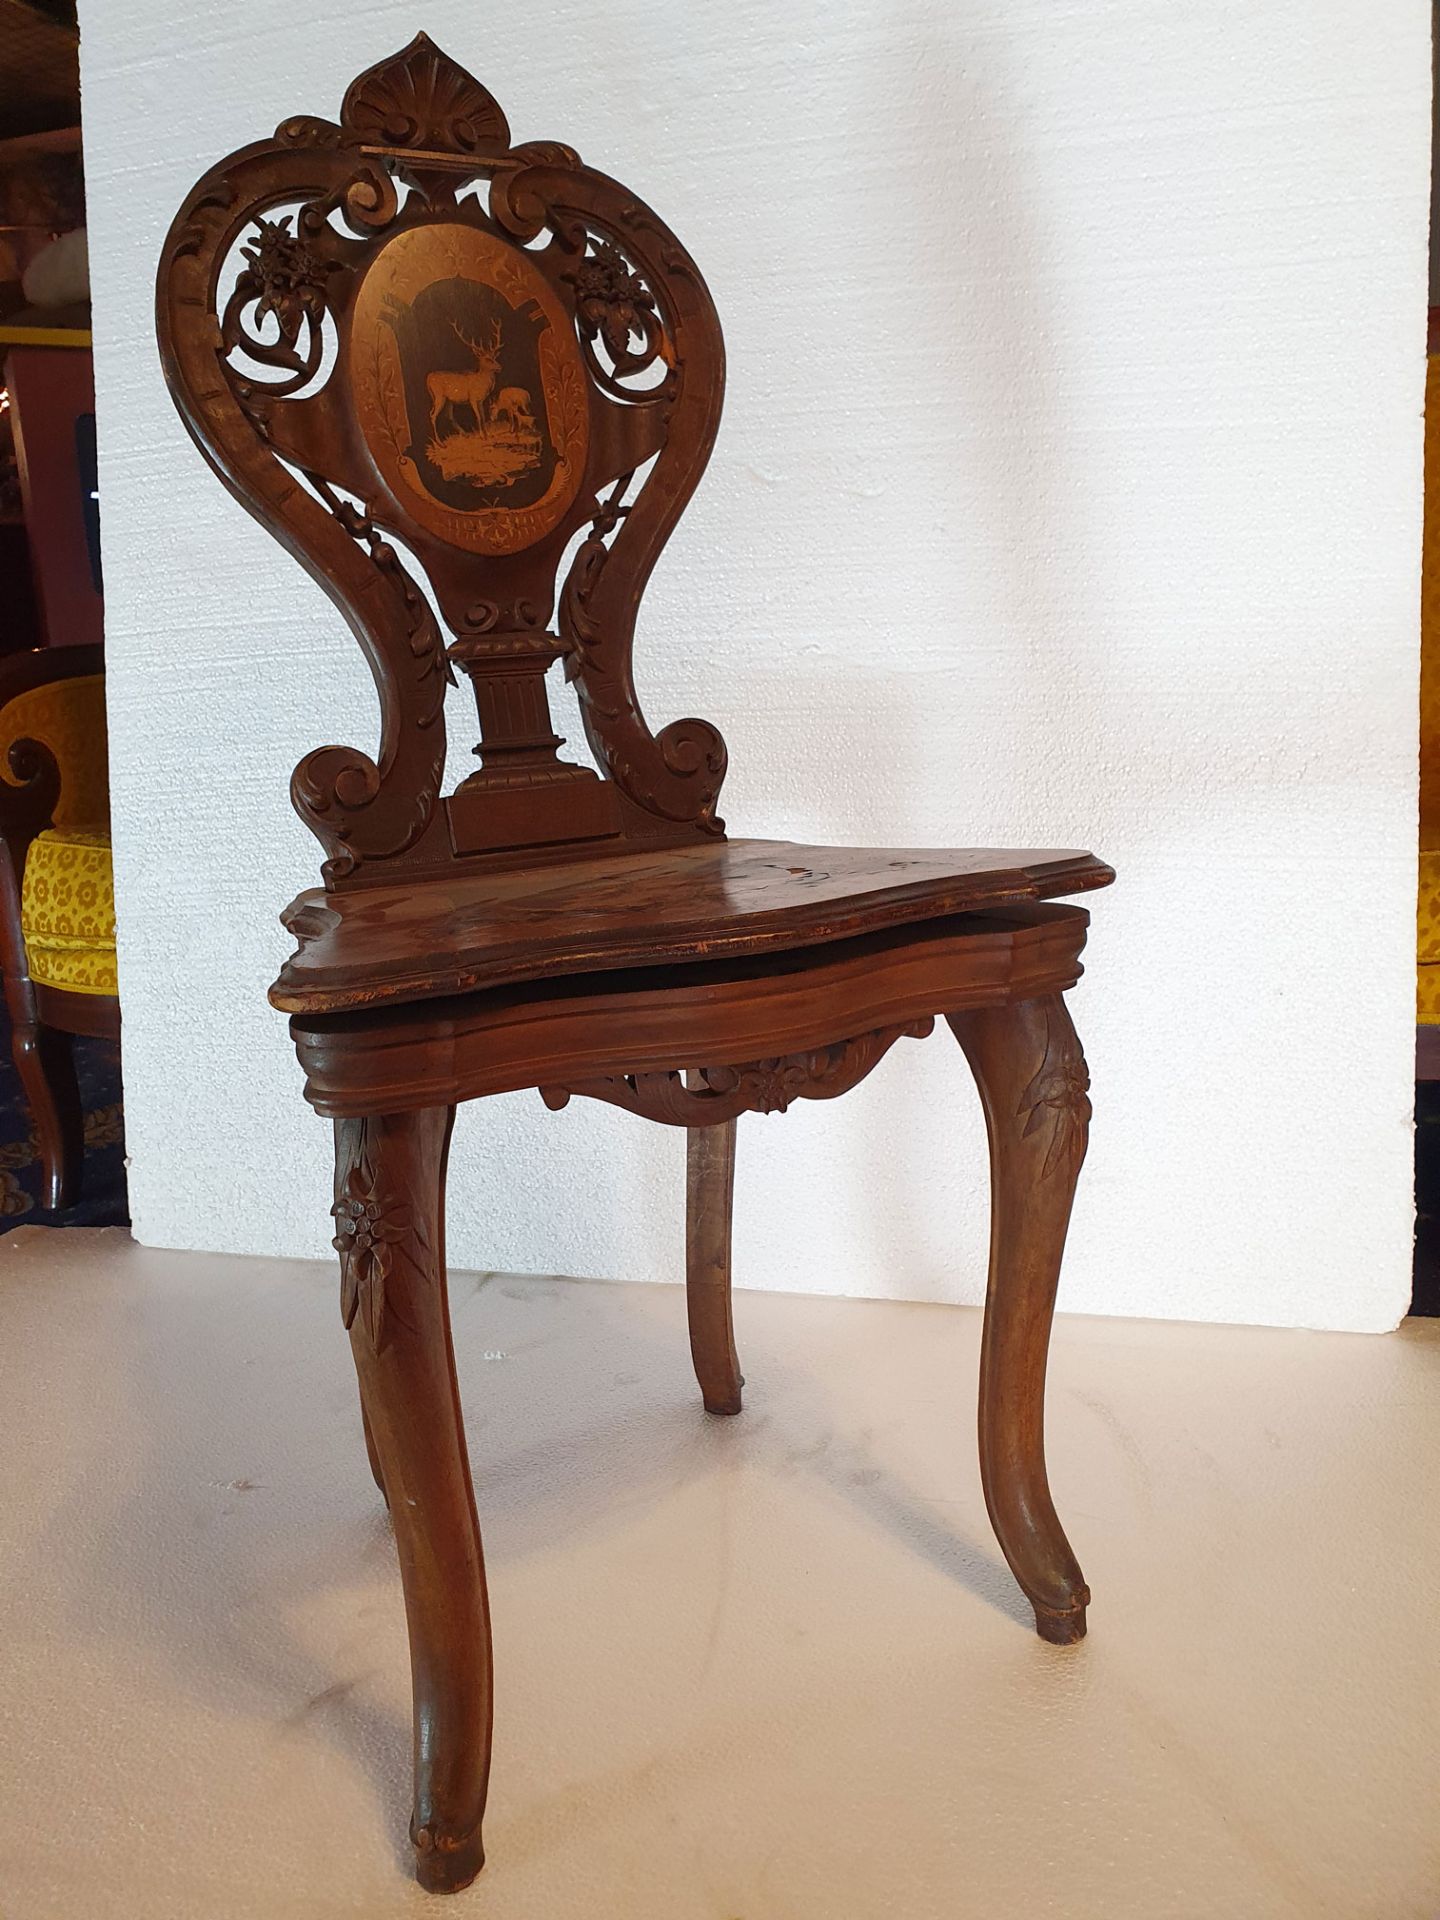 Antique Black Forest Wooden Chair with 3 Tune Music Box - Bild 2 aus 13